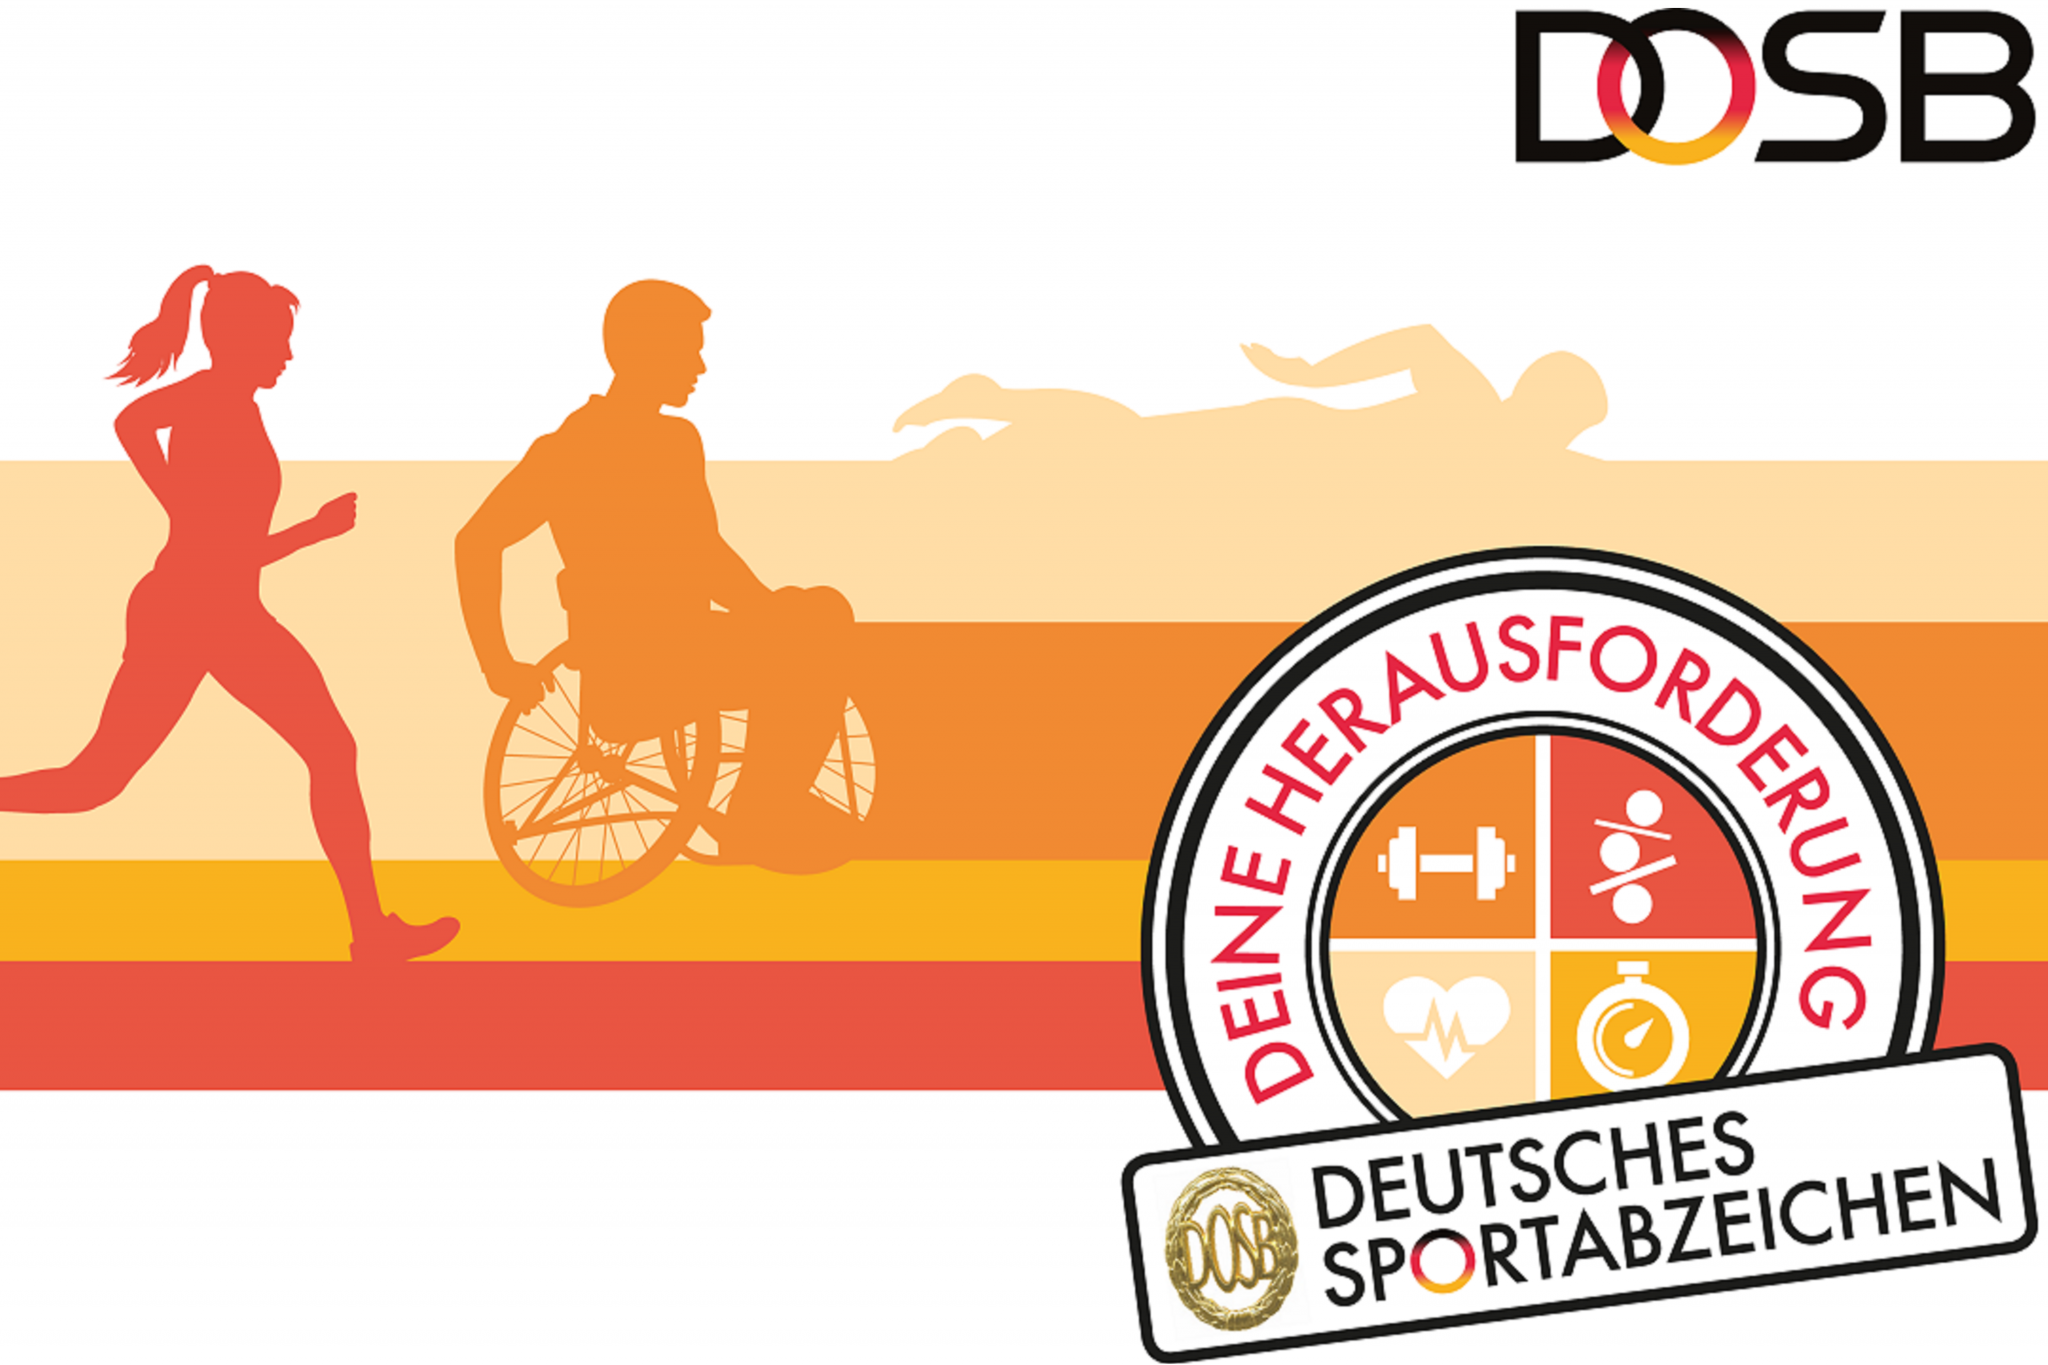 deutsches sportabzeichen header 2048x1365